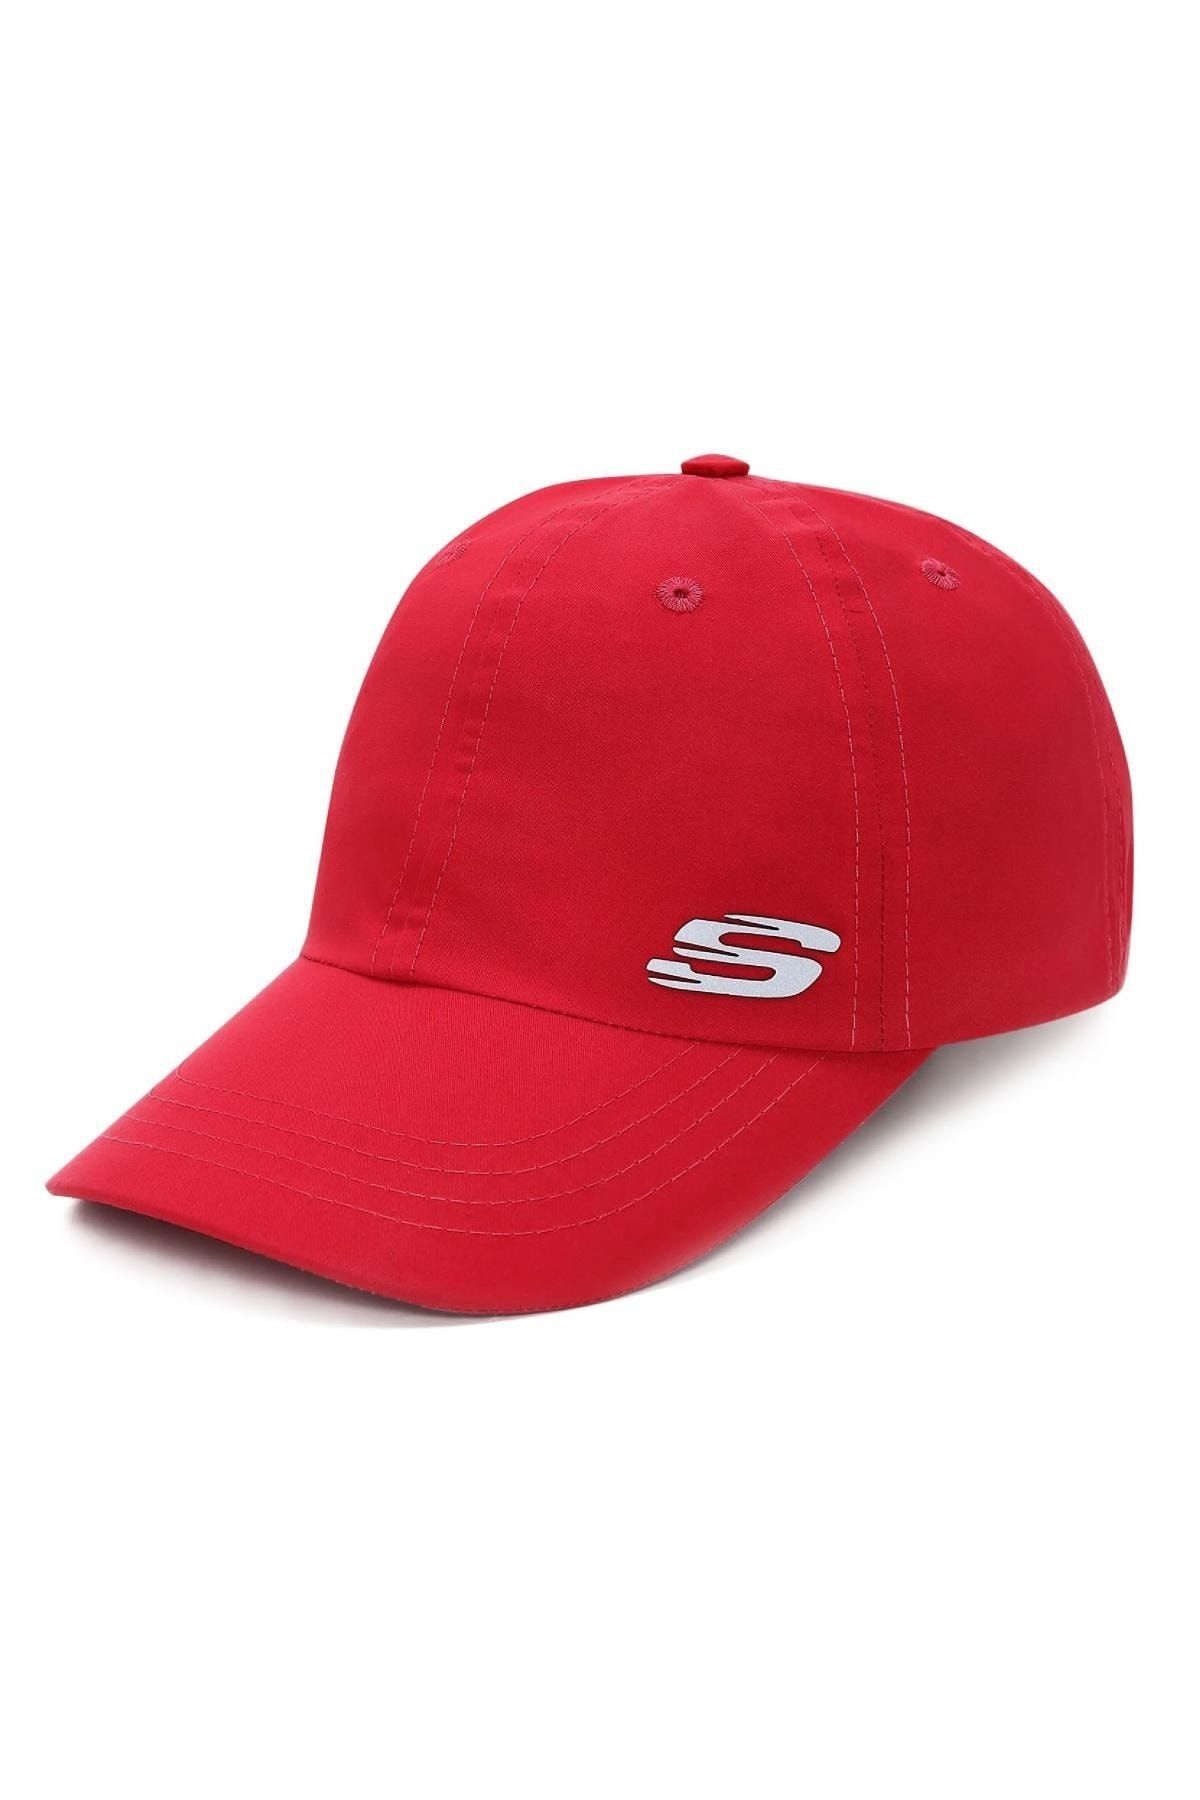 Skechers S231481 M Summer Acc Cap Kırmızı Unisex Şapka